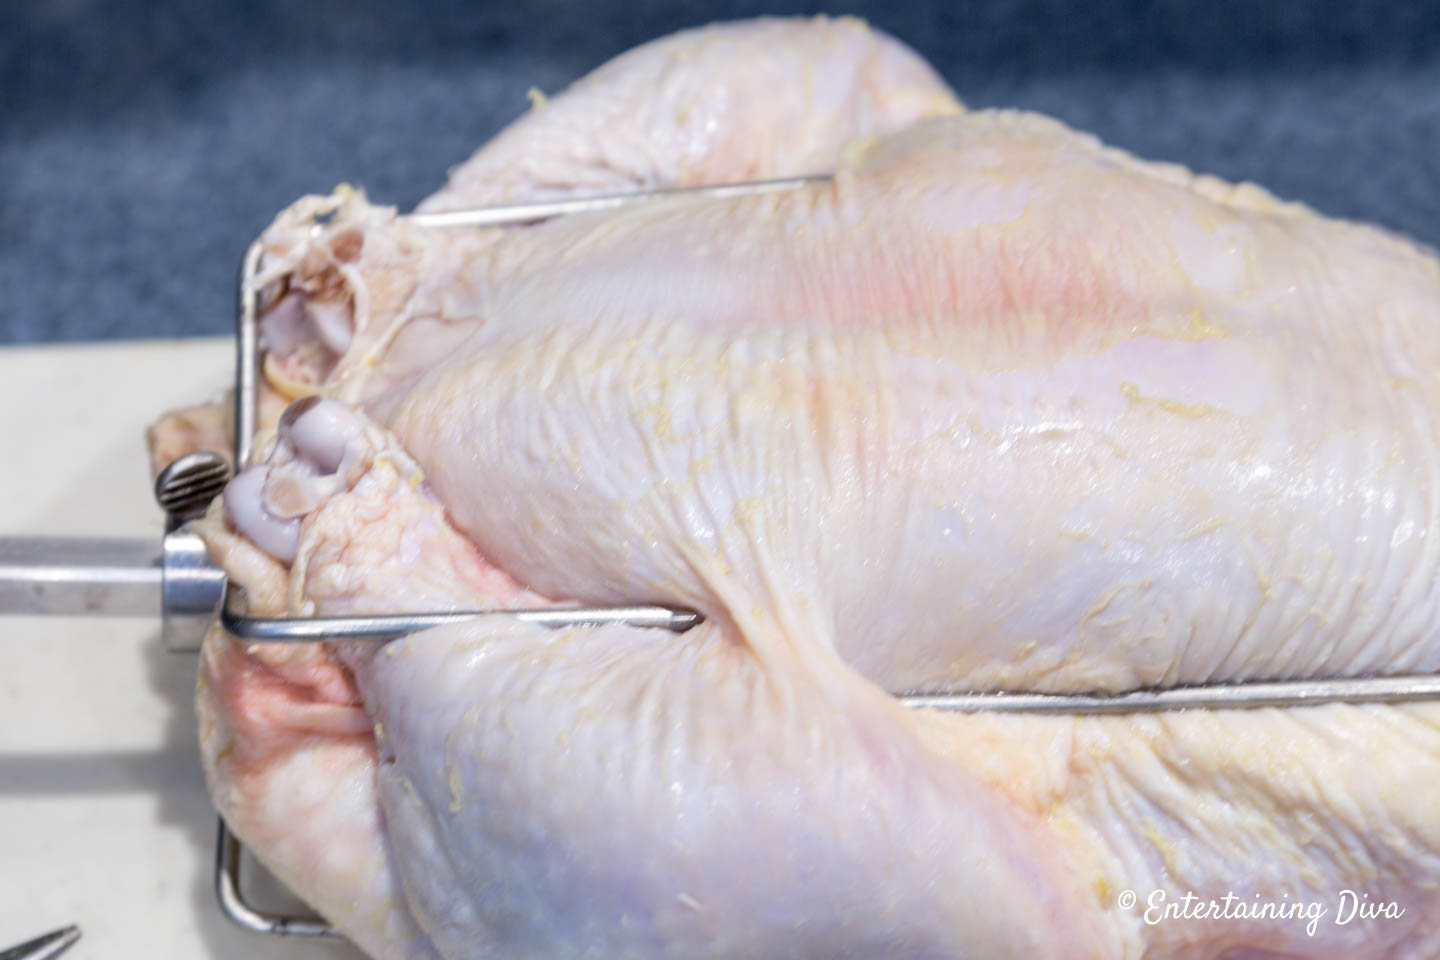 Chicken legs being held by rotisserie spit